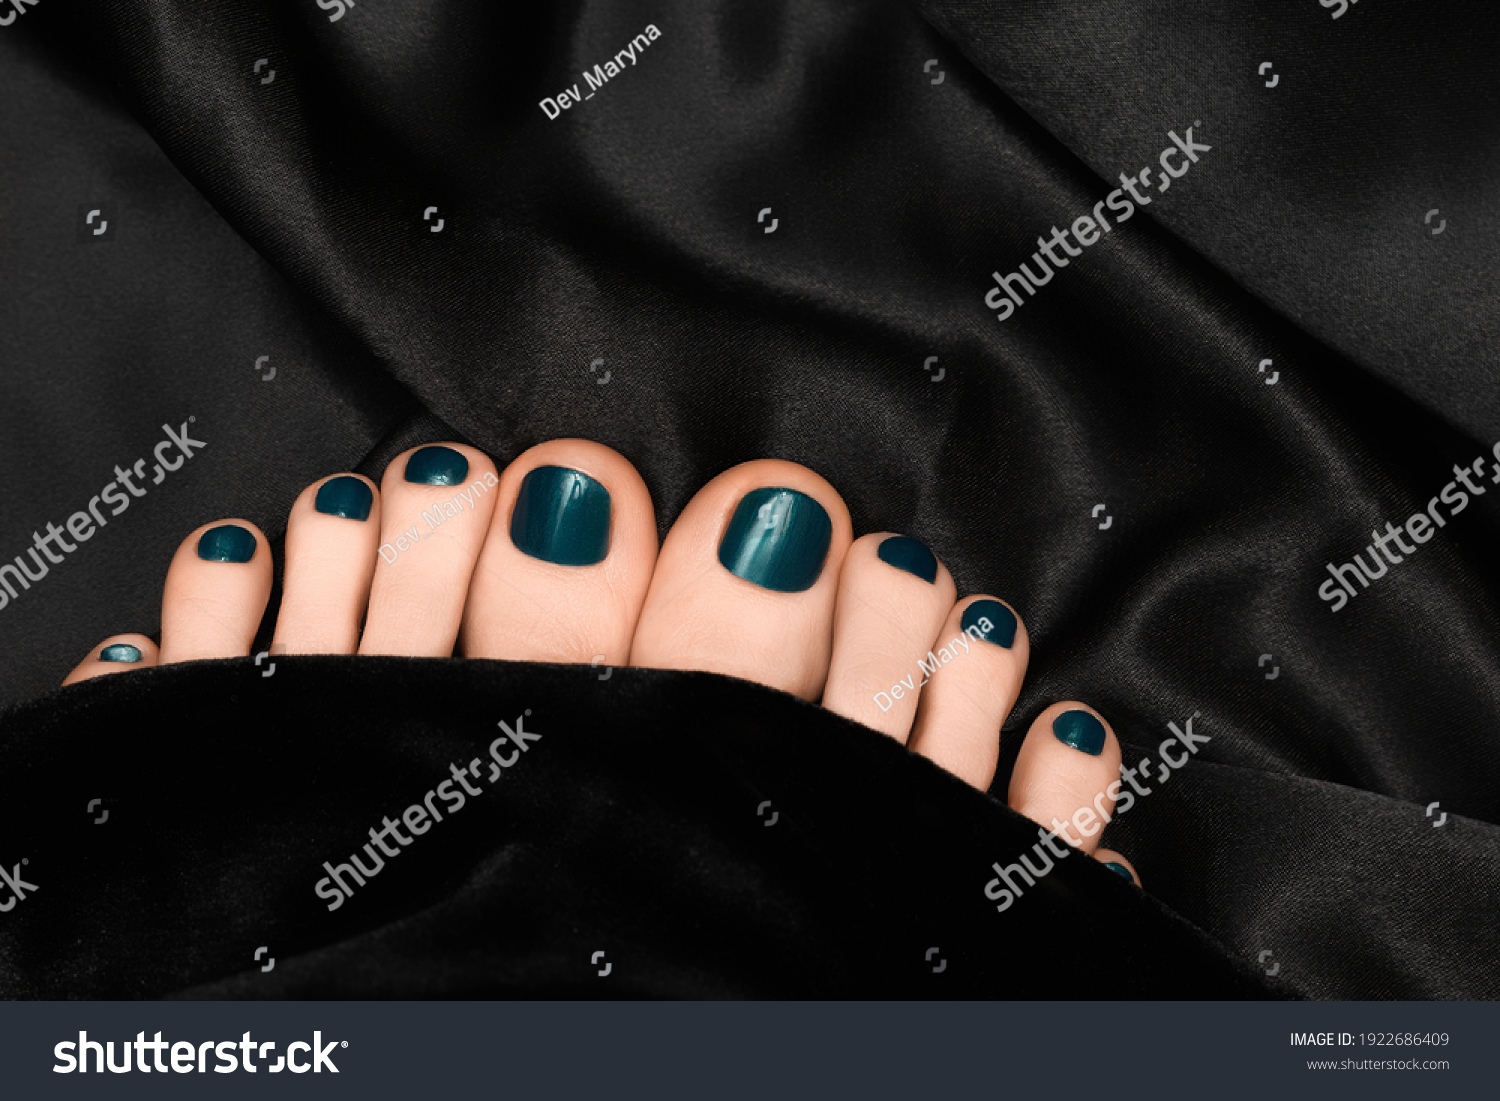 Female Feet Black Nail Design Black Stock Photo 1922686409 | Shutterstock